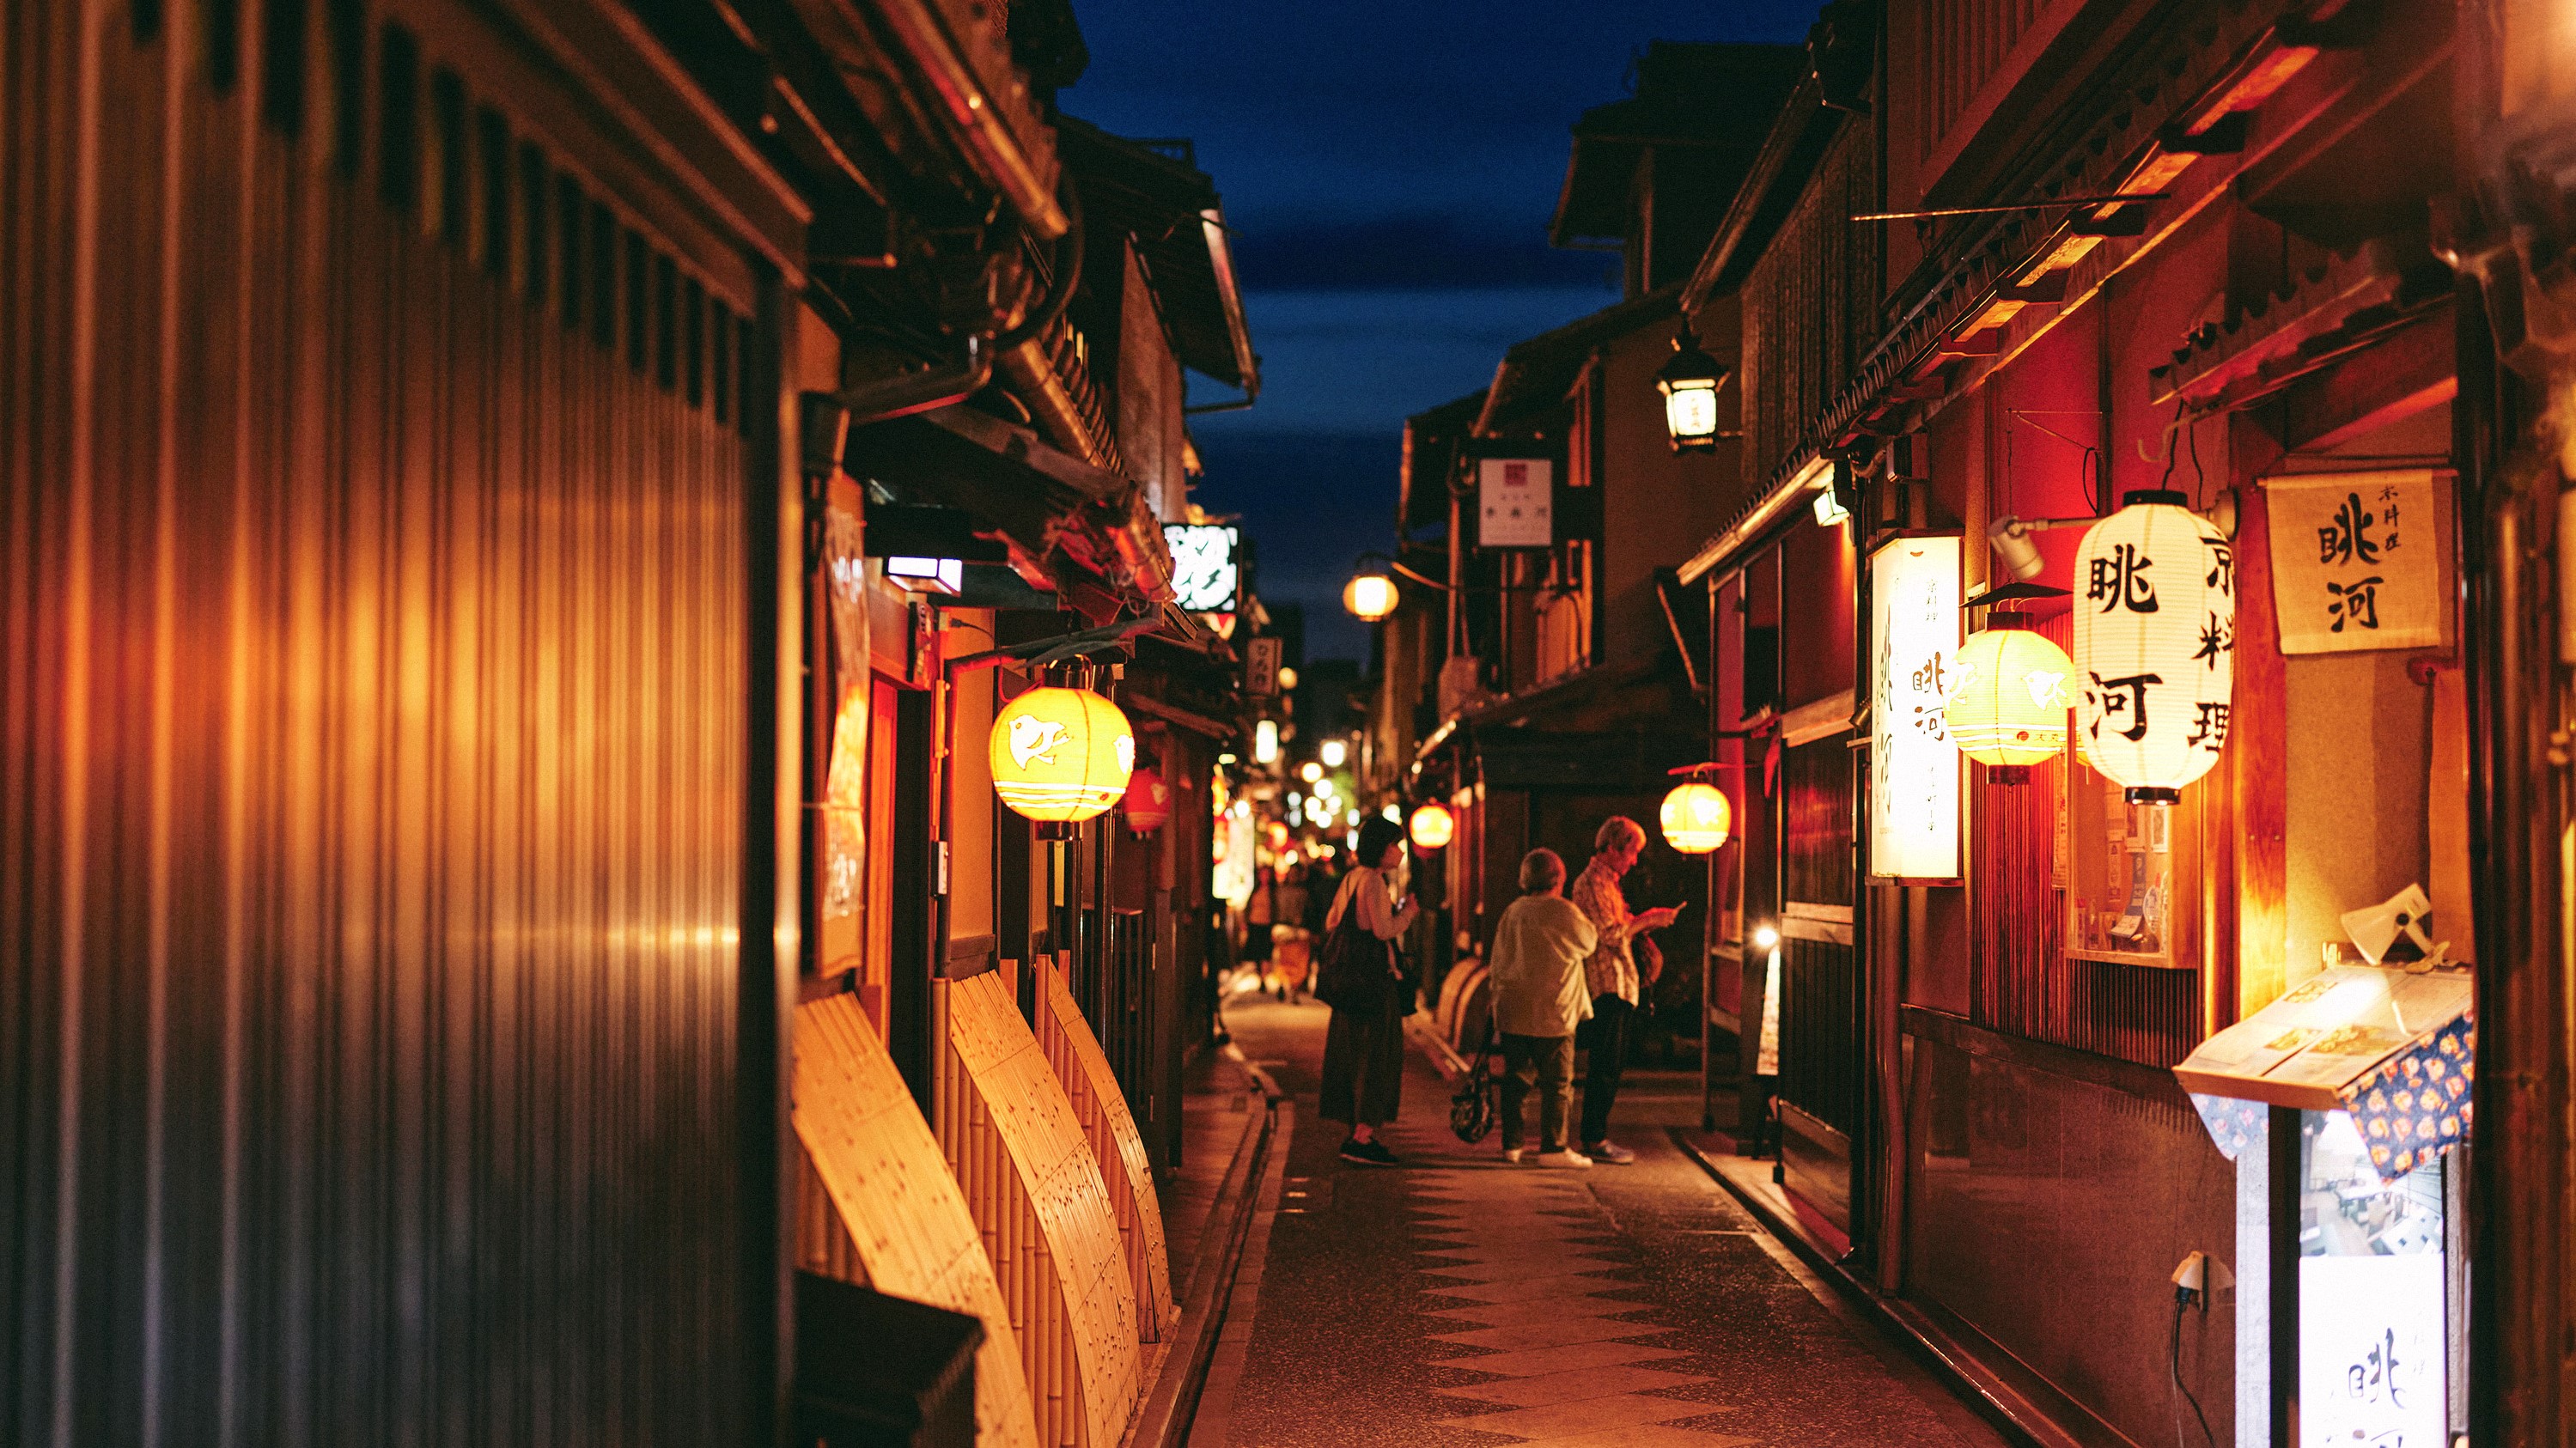 京都らしい風情にあふれた先斗町には芸妓さん舞妓さんのいる茶屋、魅力的な飲食店、劇場などがございます